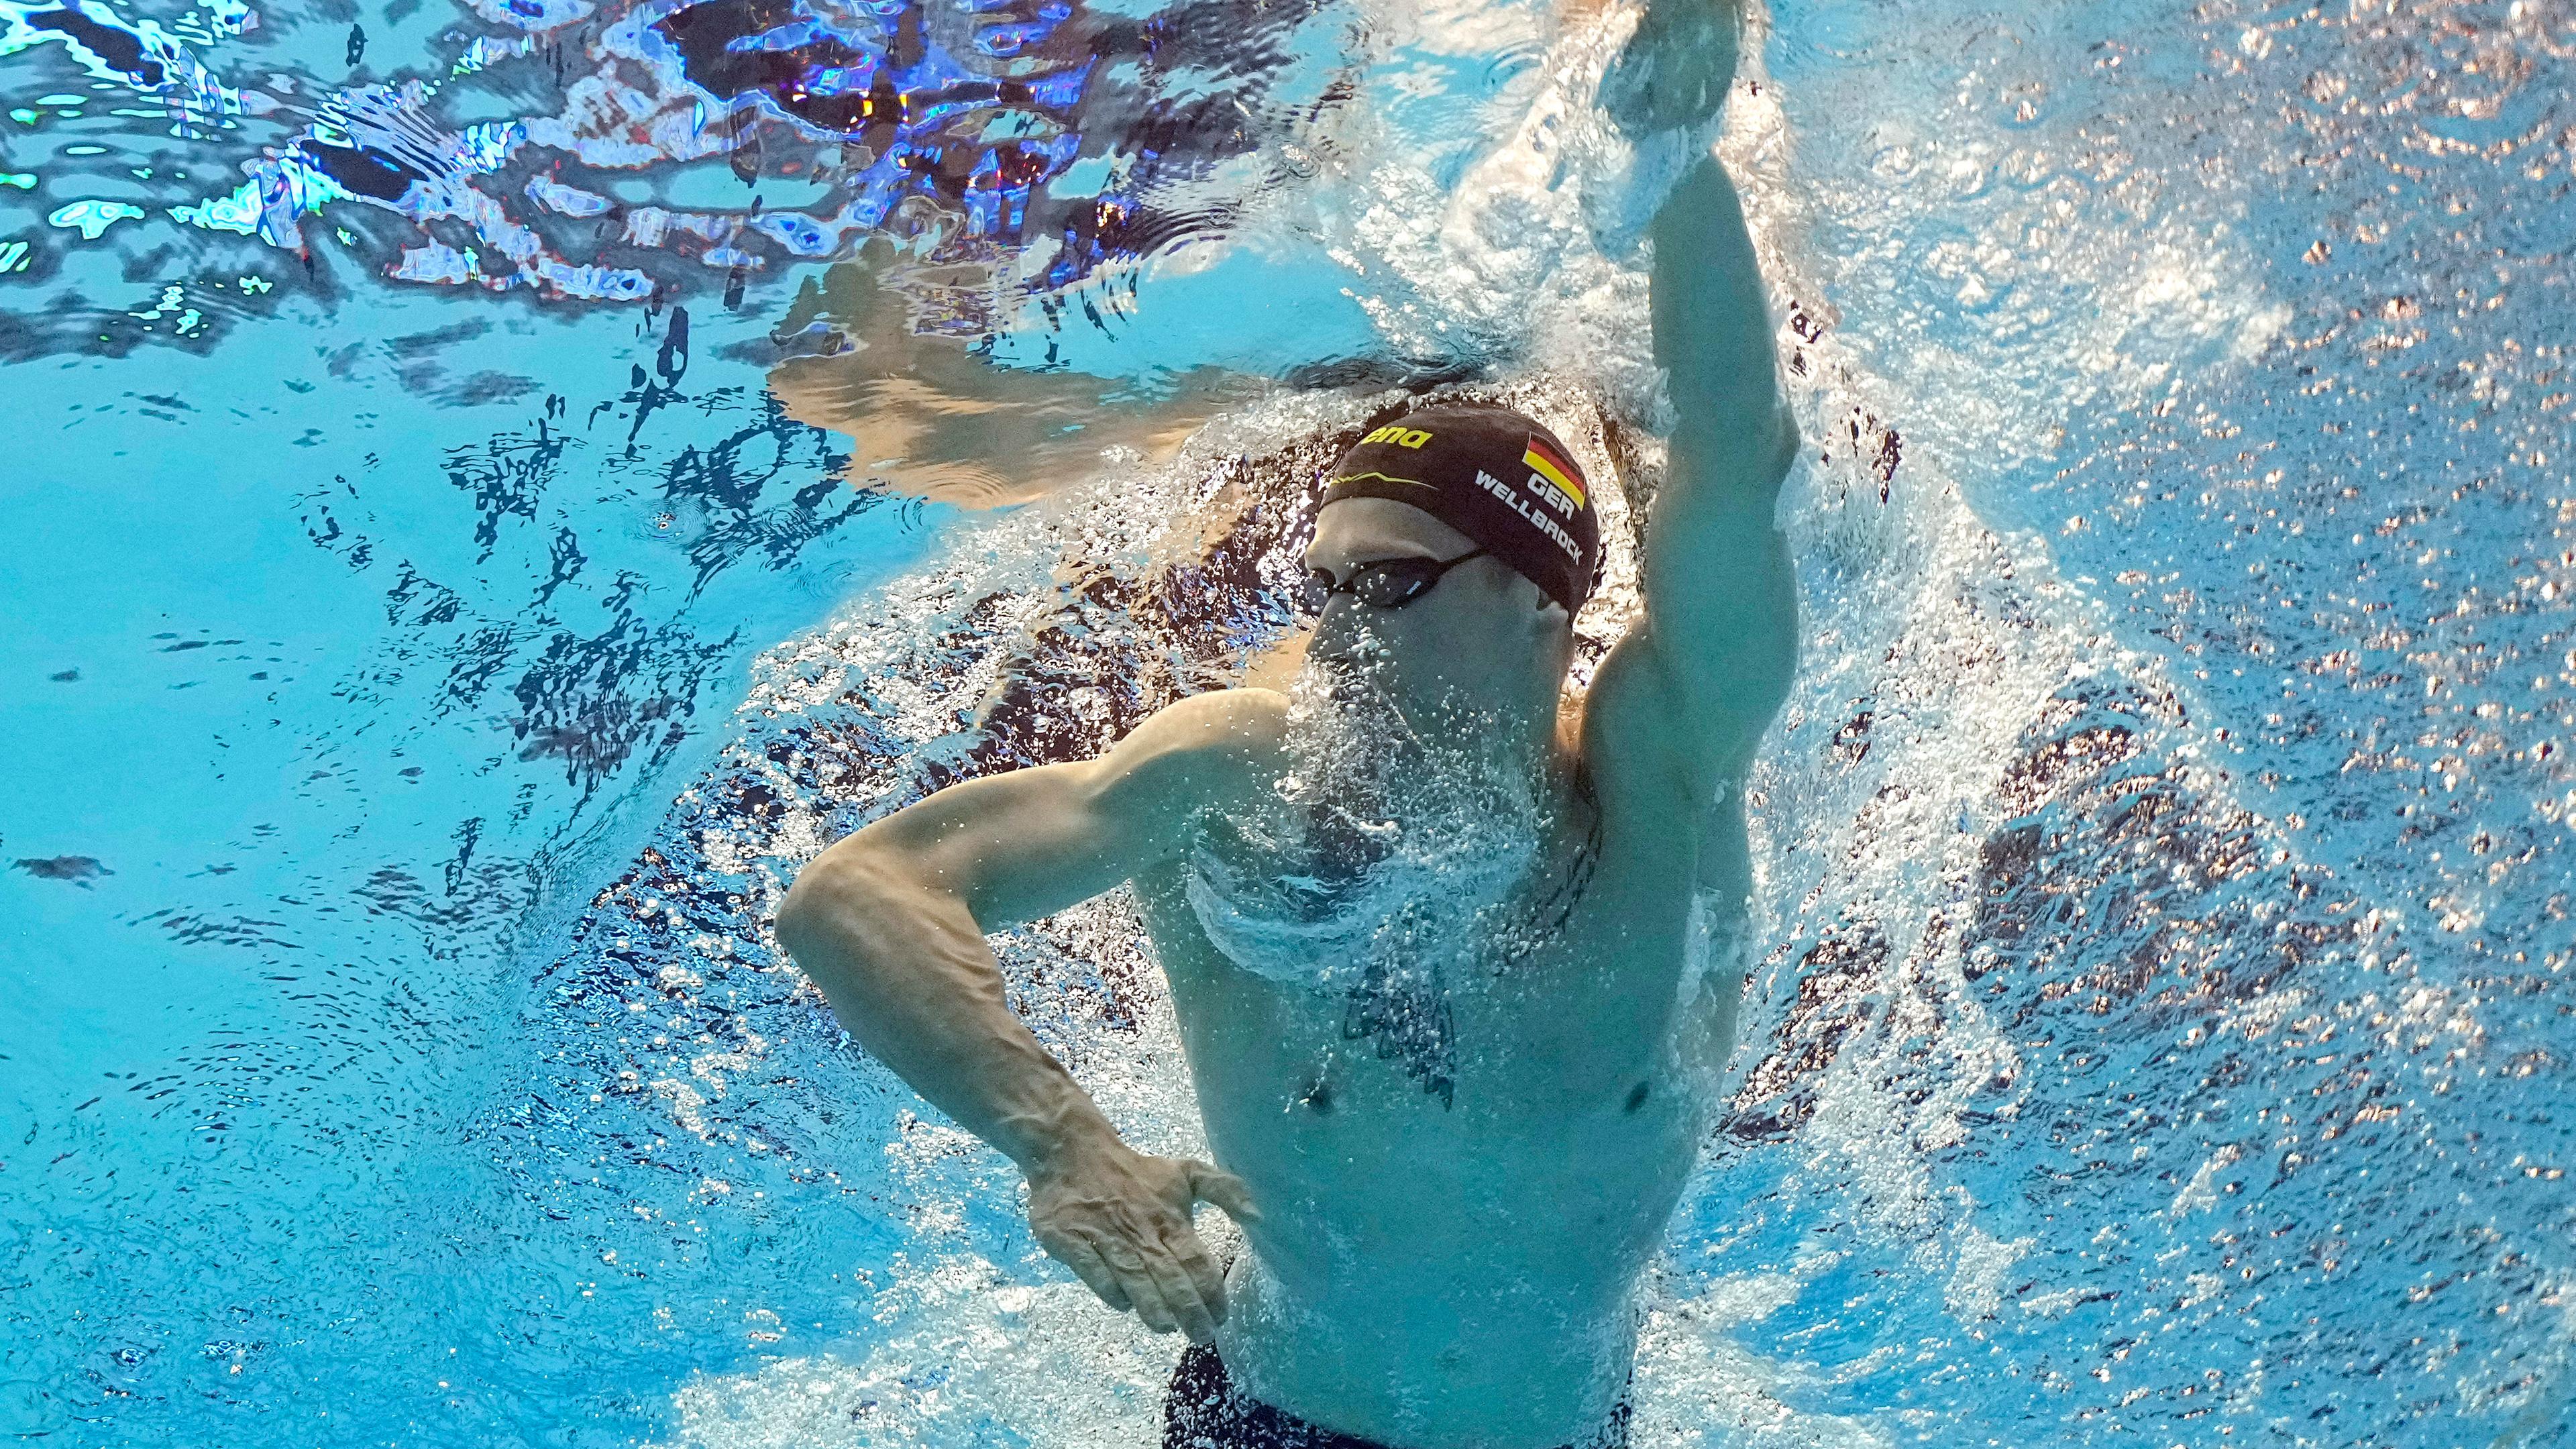 Schwimmer Florian Wellbrock